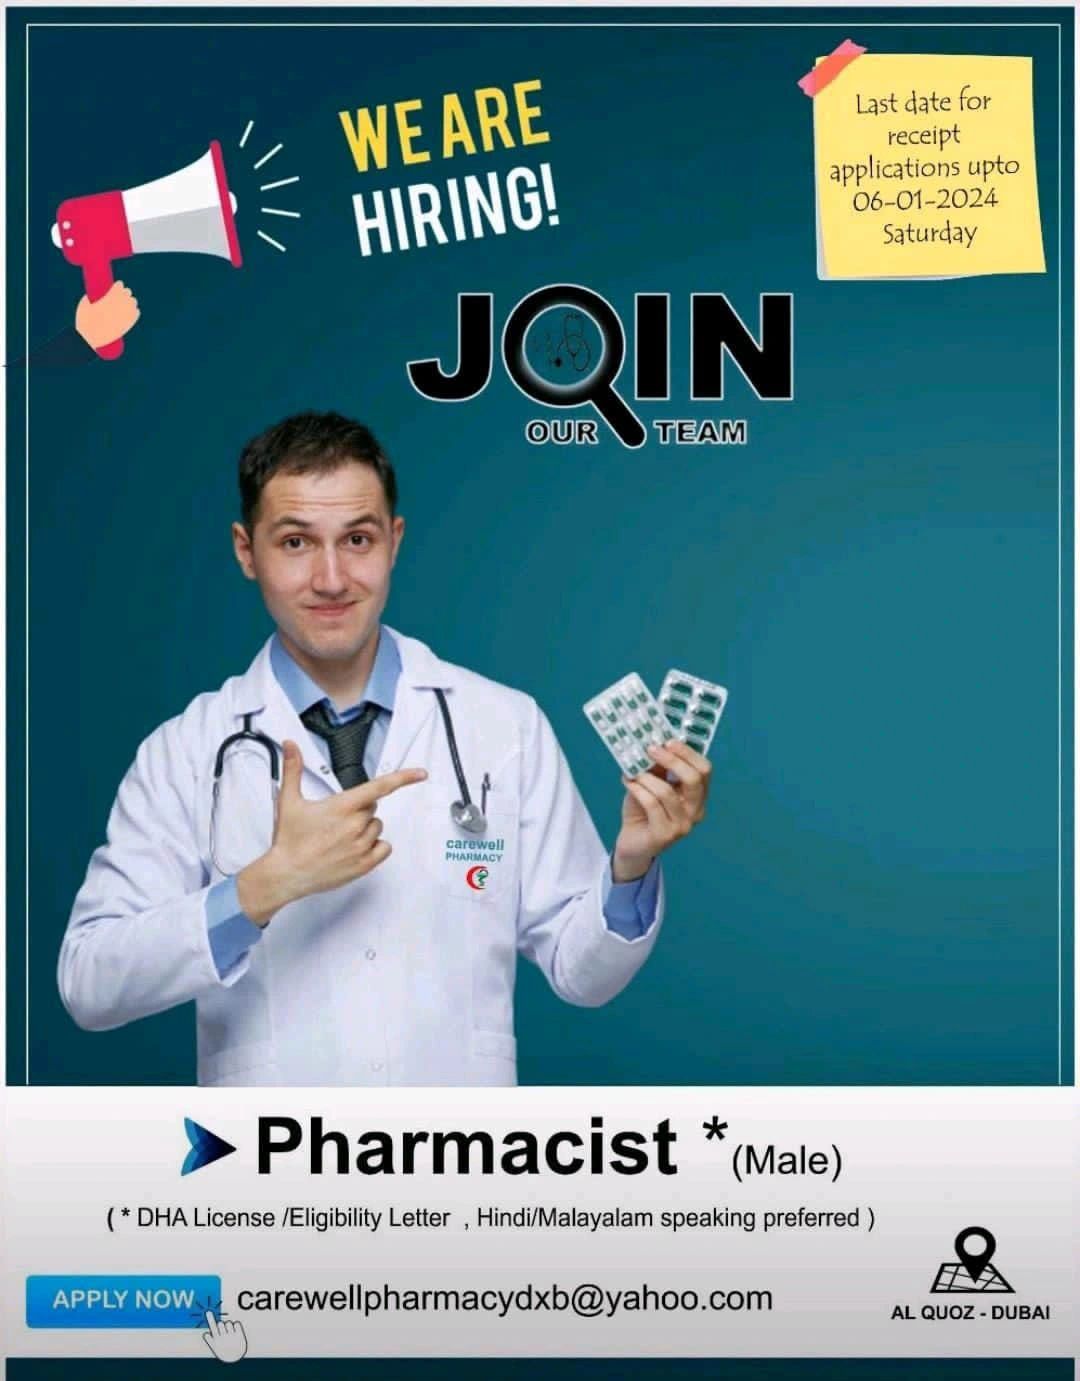 TAUFEEQUE AHMAD on LinkedIn: #dha #pharmacist #uaecareers